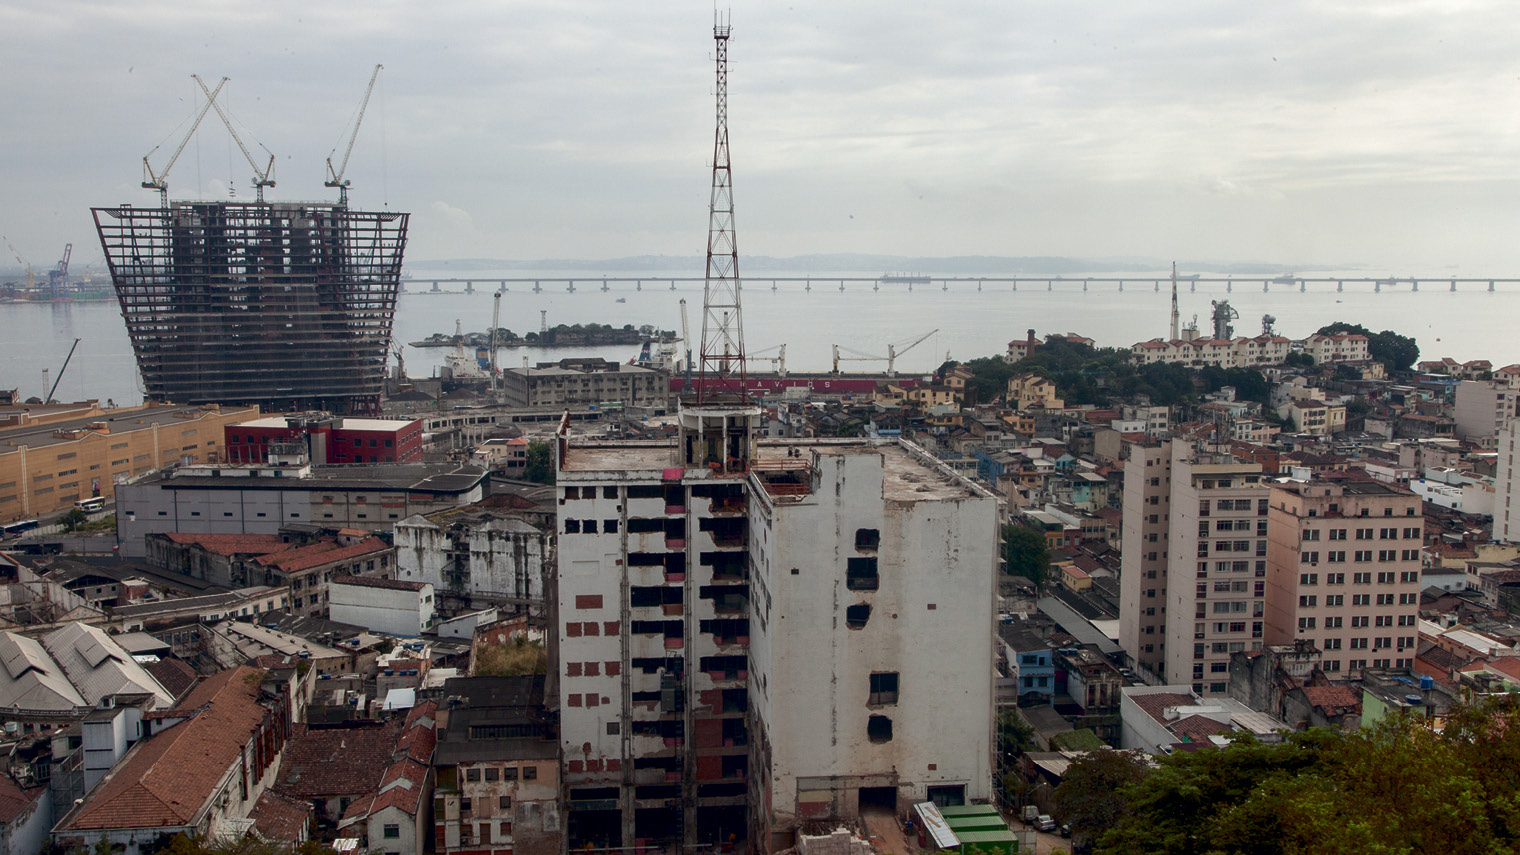 The port area of Rio de Janeiro from the Morro da Providência favela